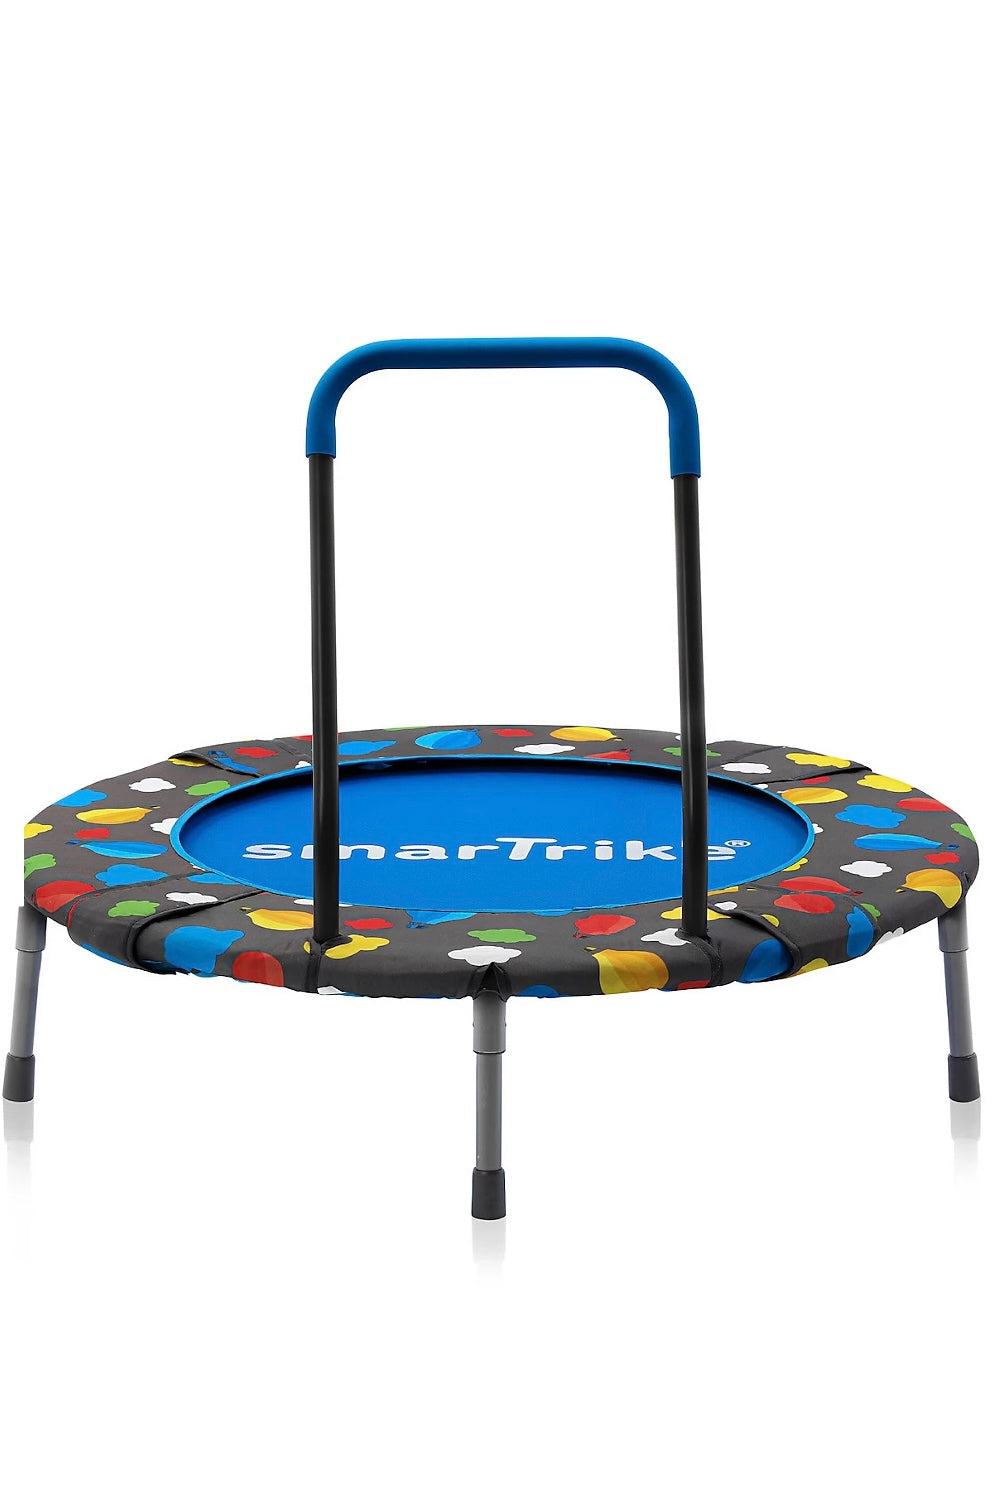 SmarTrike 2-in-1 trampoline